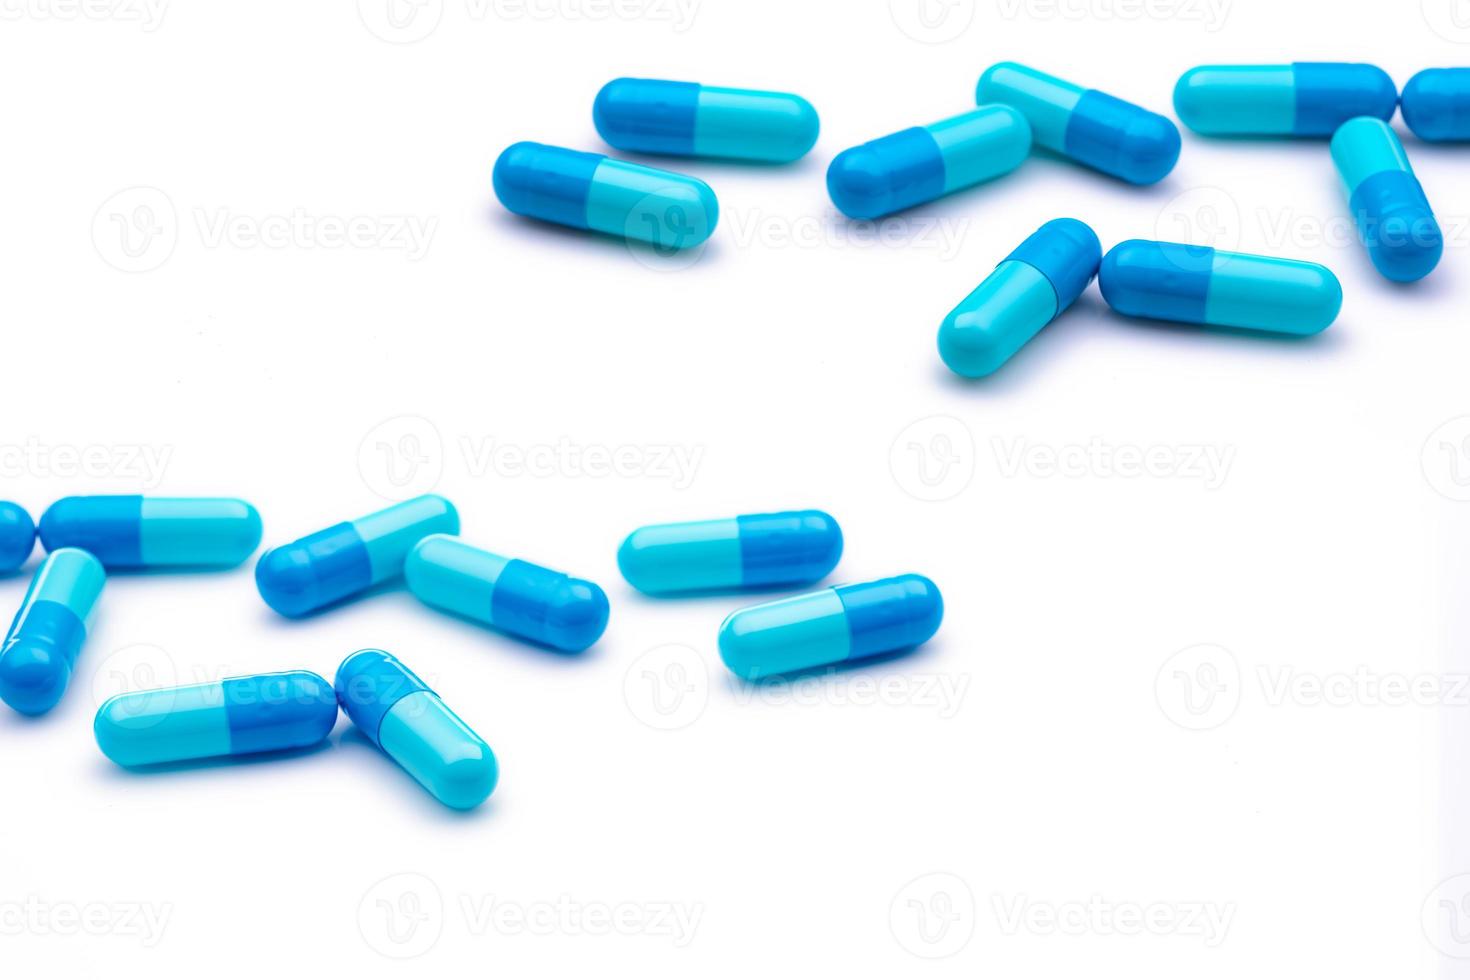 blå kapsel piller på vit bakgrund. läkemedelsindustri. apoteks- eller apoteksprodukter. sjukvård och medicin. hälsobudget koncept. läkemedelstillverkning. grupp av kapselpiller. foto